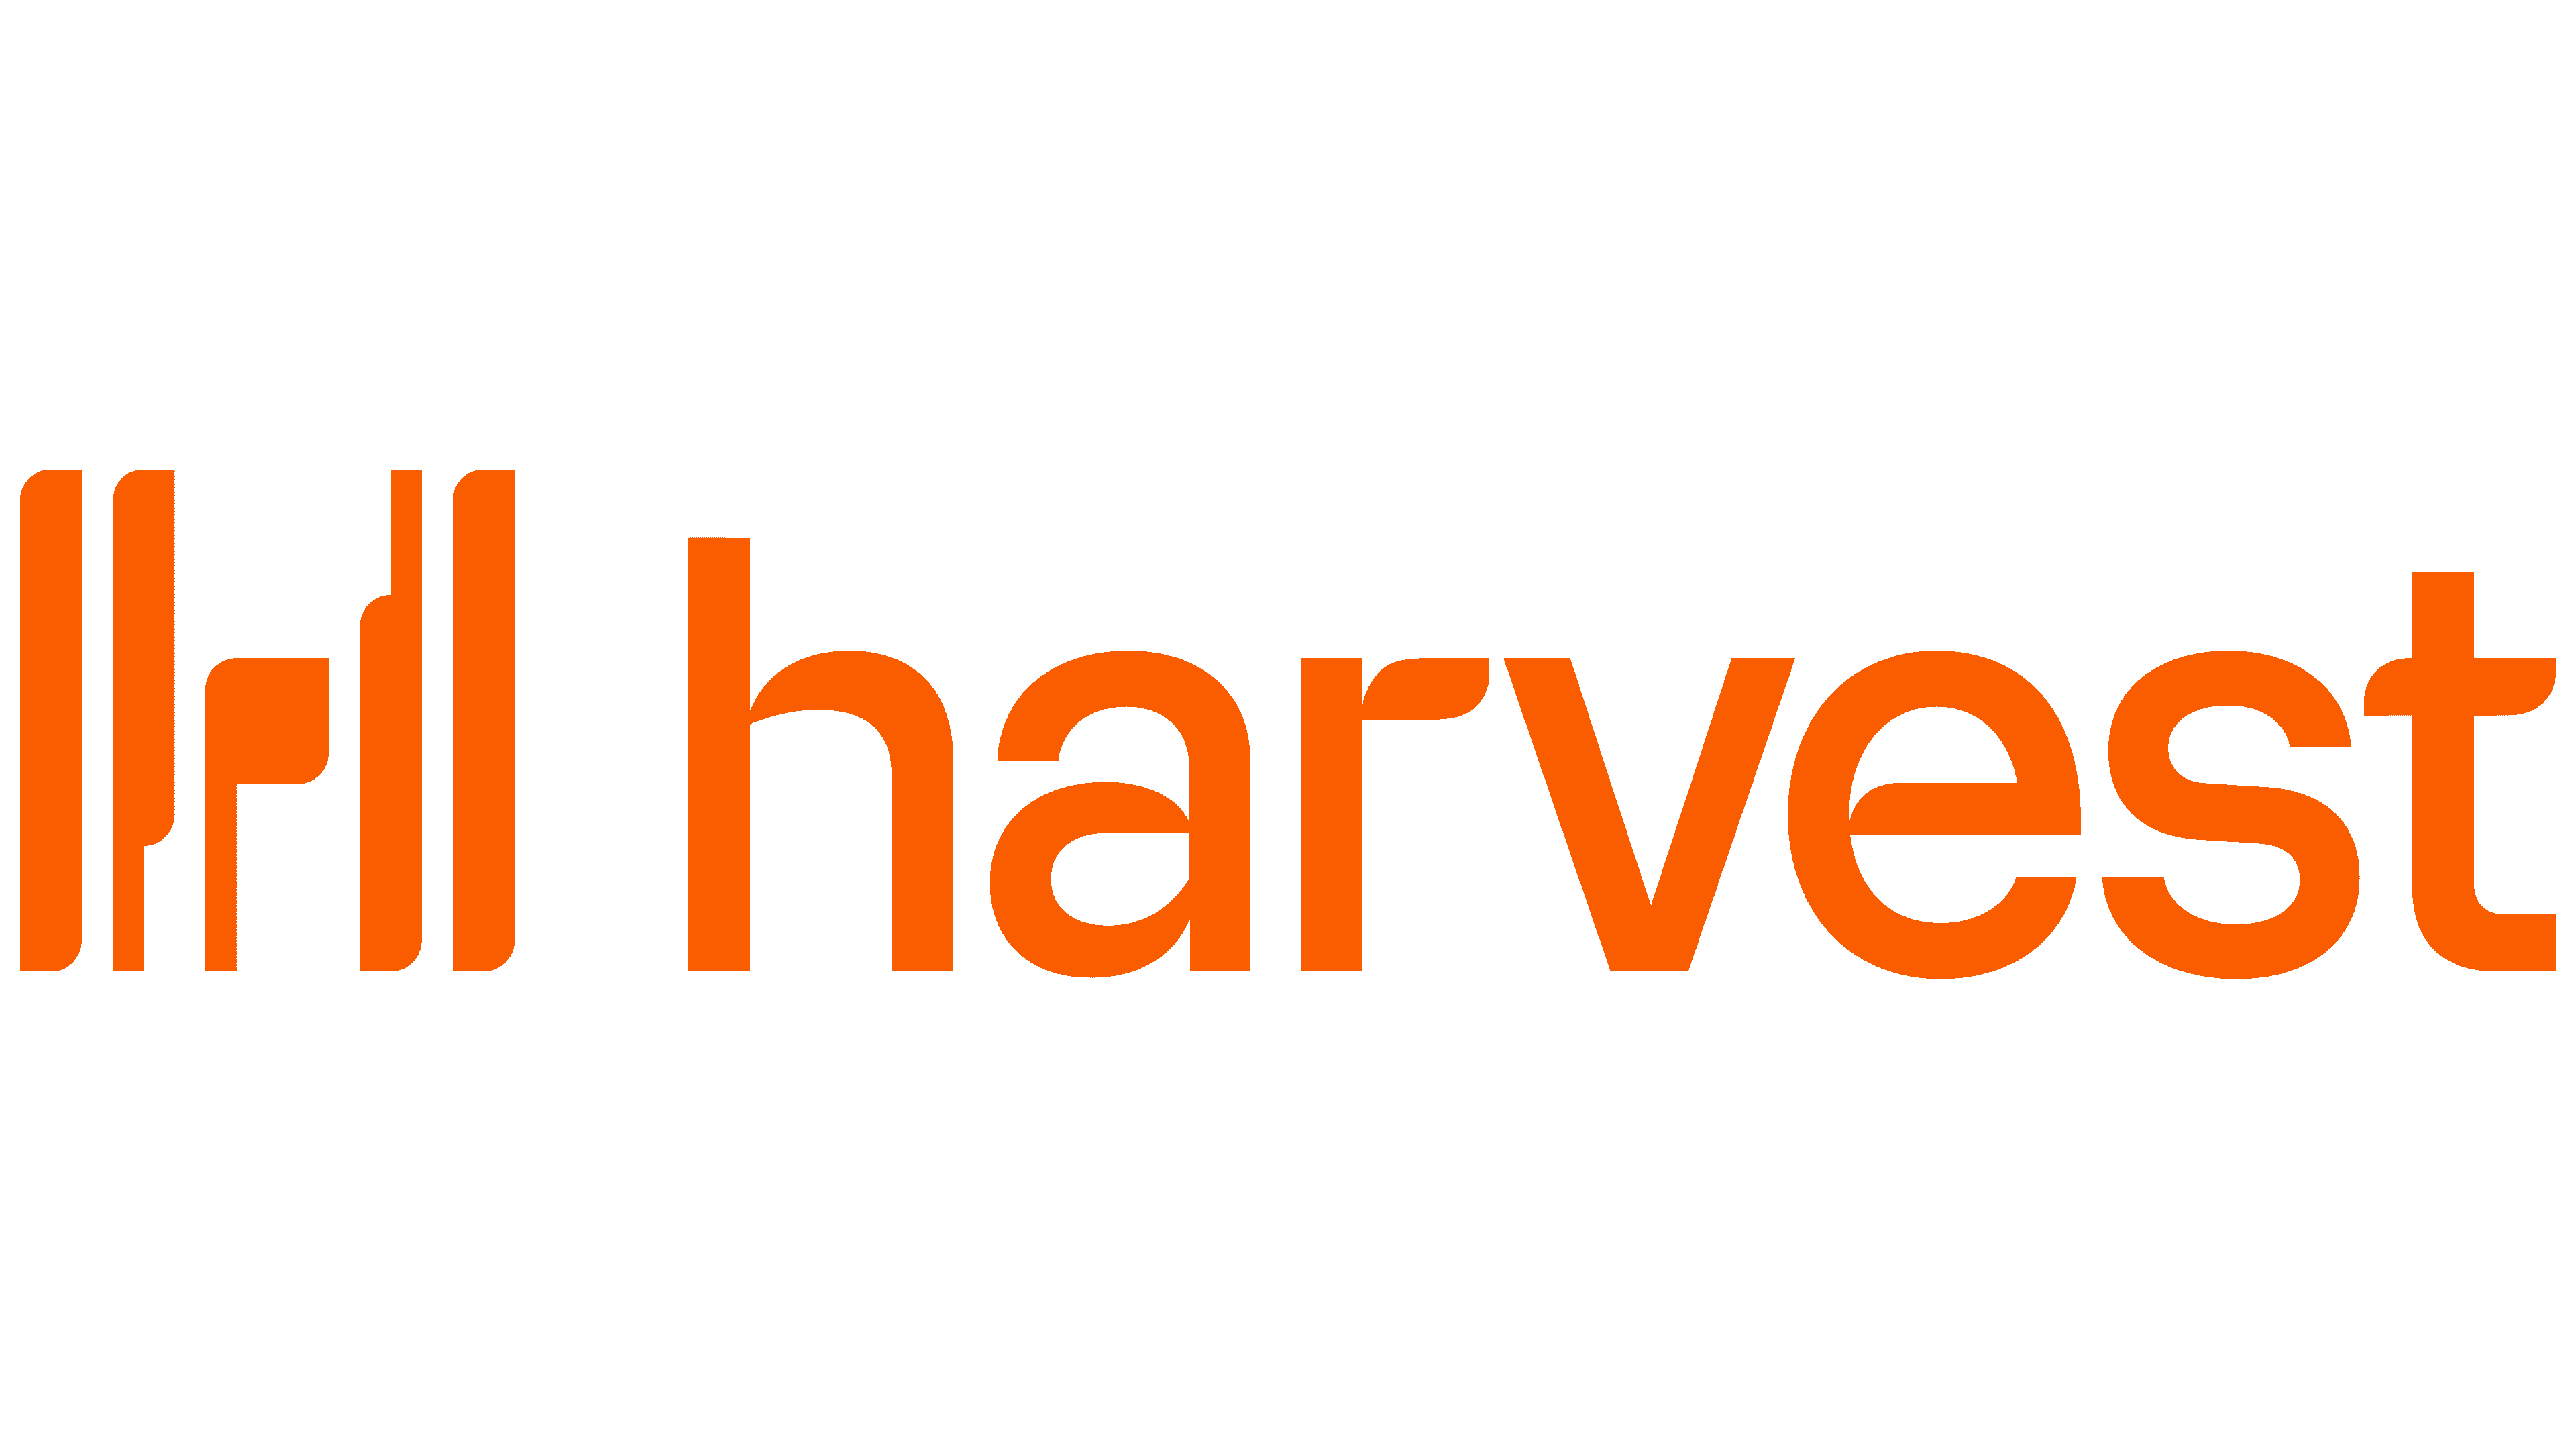 Harvest-Logo